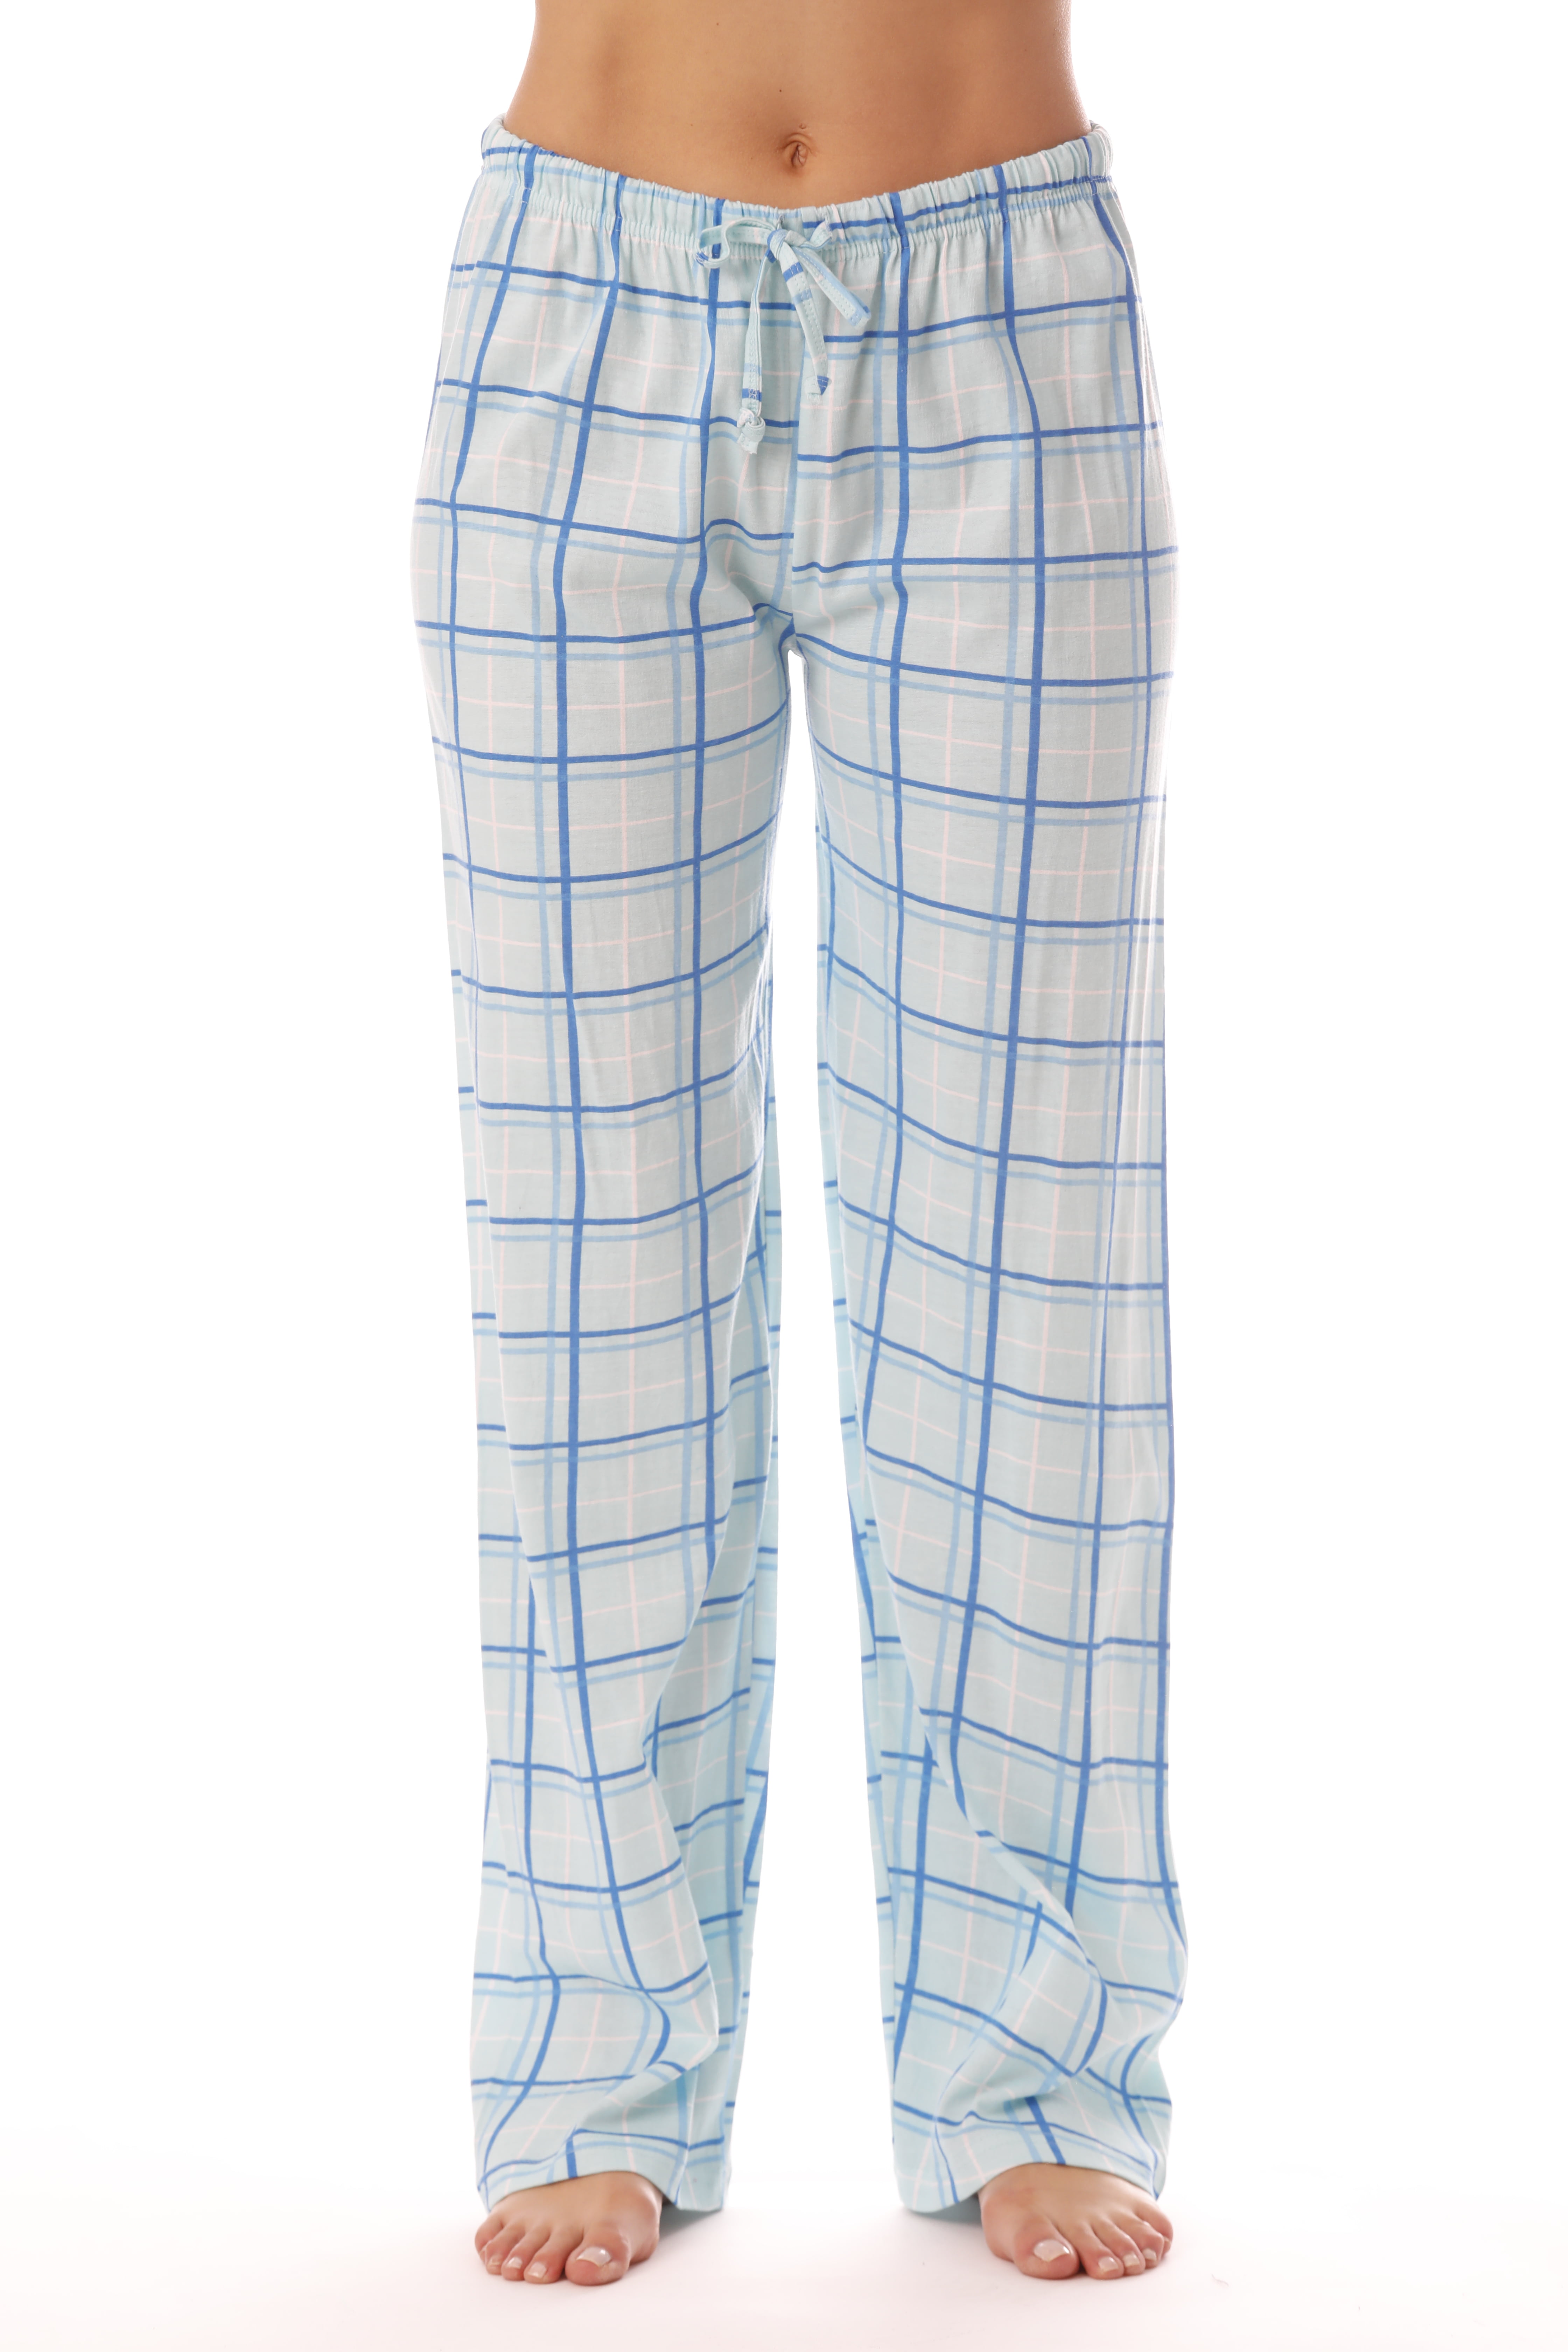 Just Love Women Plaid Pajama Pants Sleepwear (Blue Plaid, Large ...